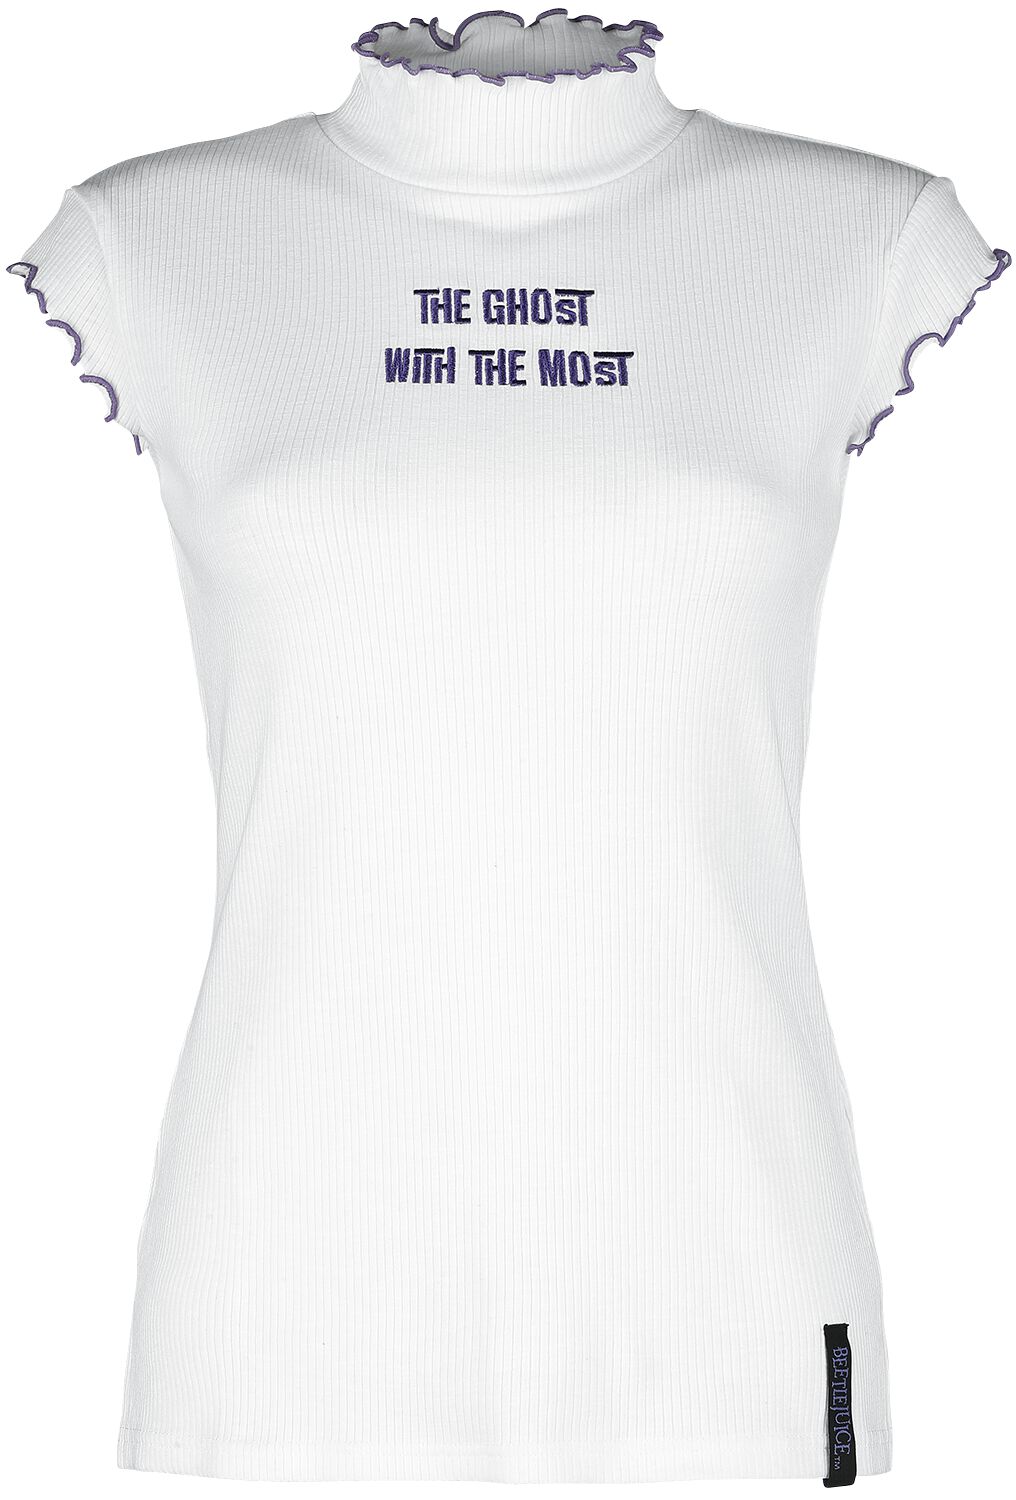 Beetlejuice T-Shirt - Ghost With The Most - XS bis XXL - für Damen - Größe L - weiß  - EMP exklusives Merchandise!